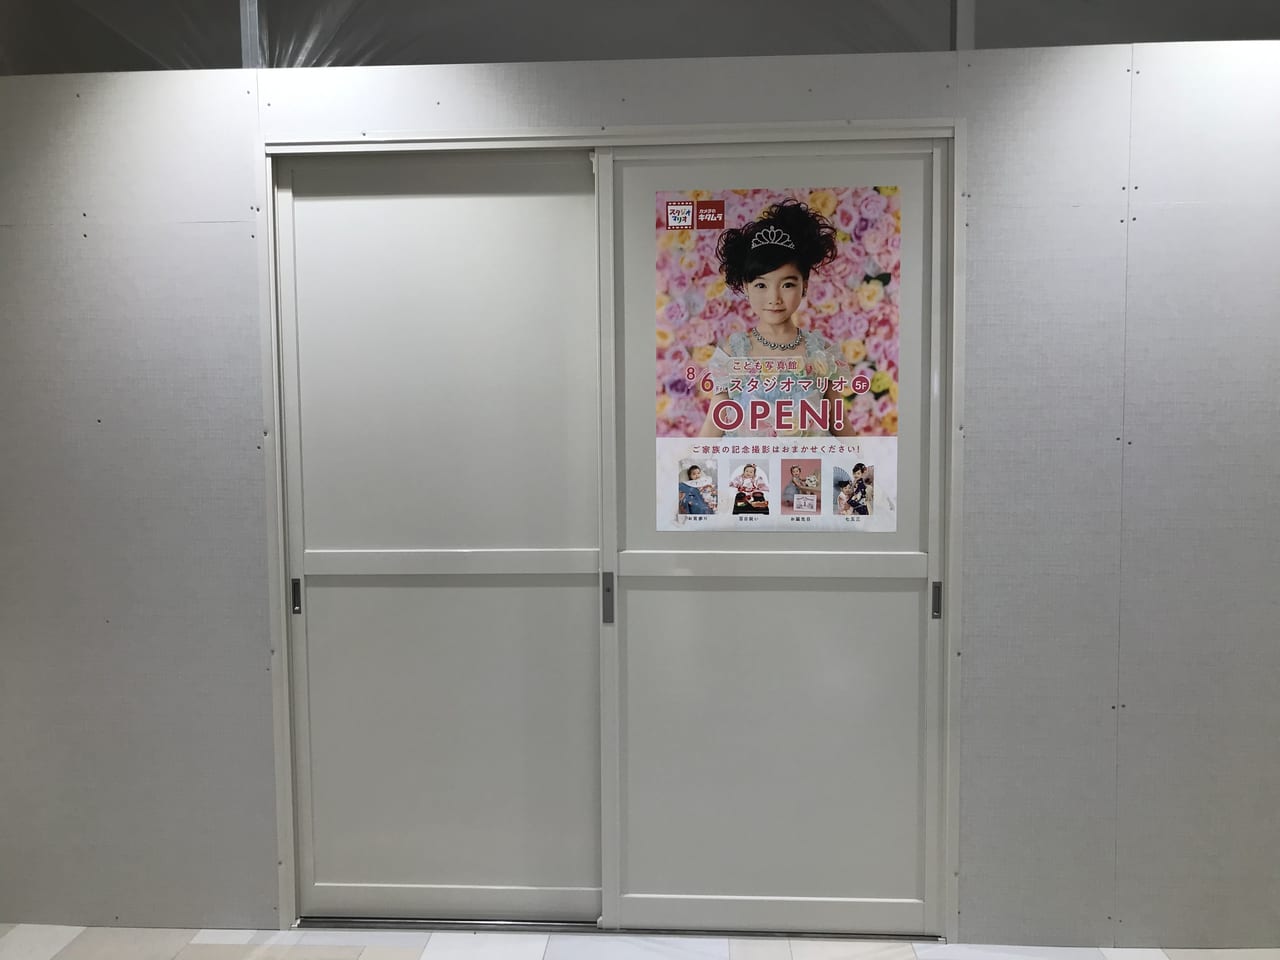 世田谷区スタジオマリオ西友三軒茶屋店が2021年8月6日にオープンします。